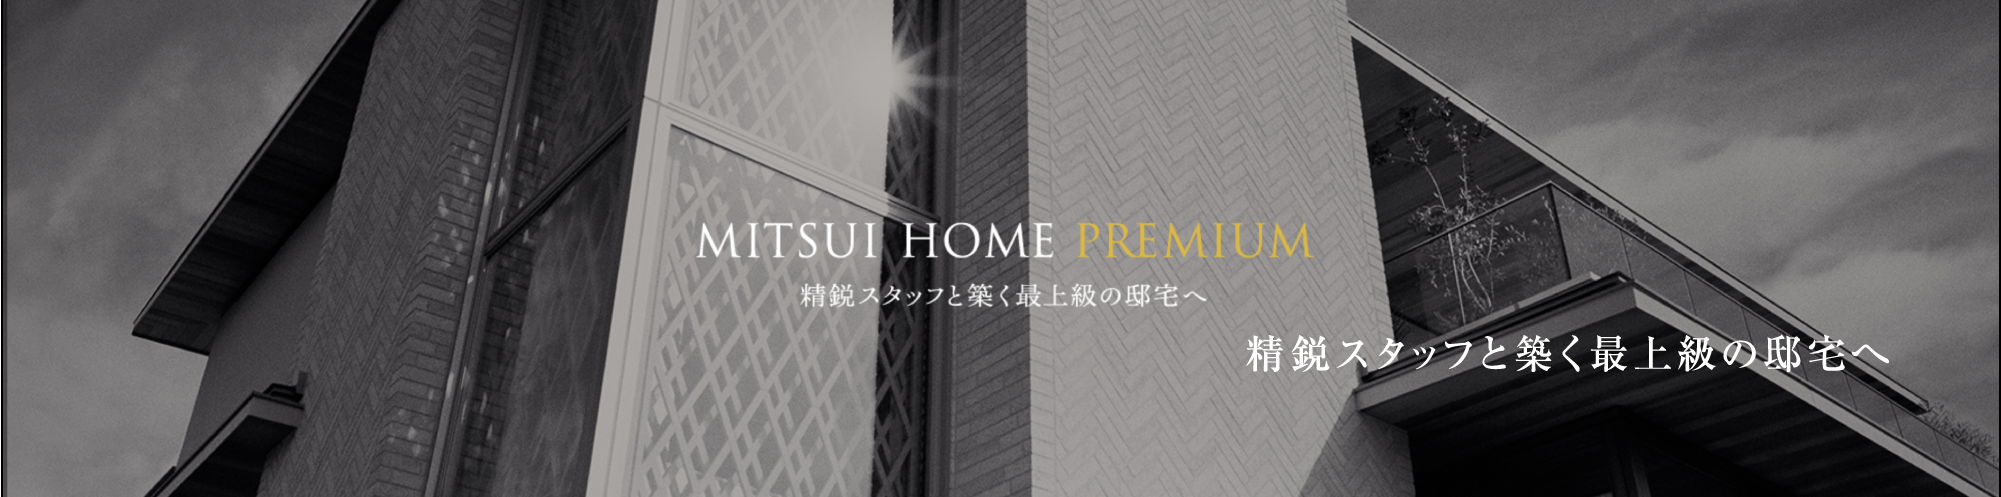 MITSUI HOME PREMIUM 精鋭スタッフと築く最上級の邸宅へ